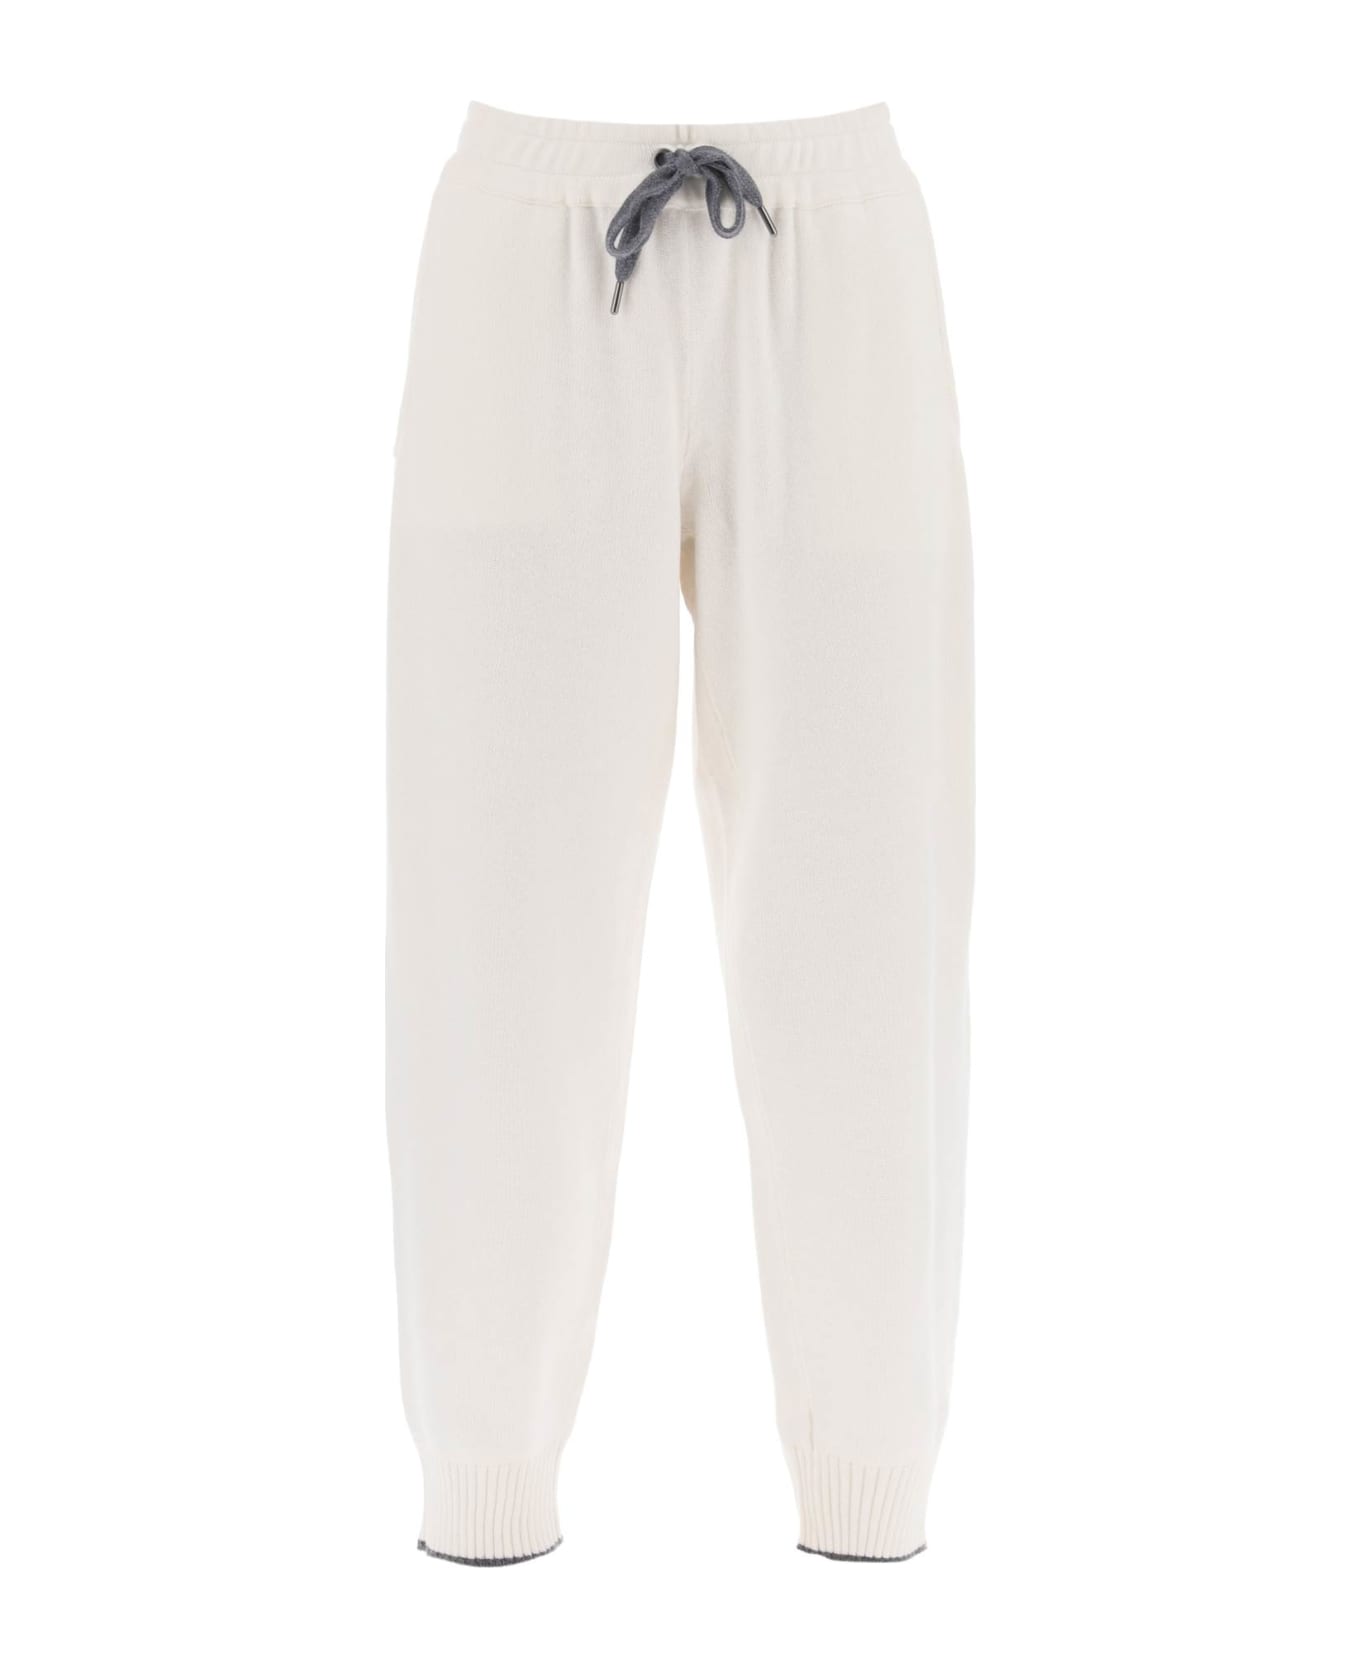 Brunello Cucinelli Cashmere Jogging Pants - White